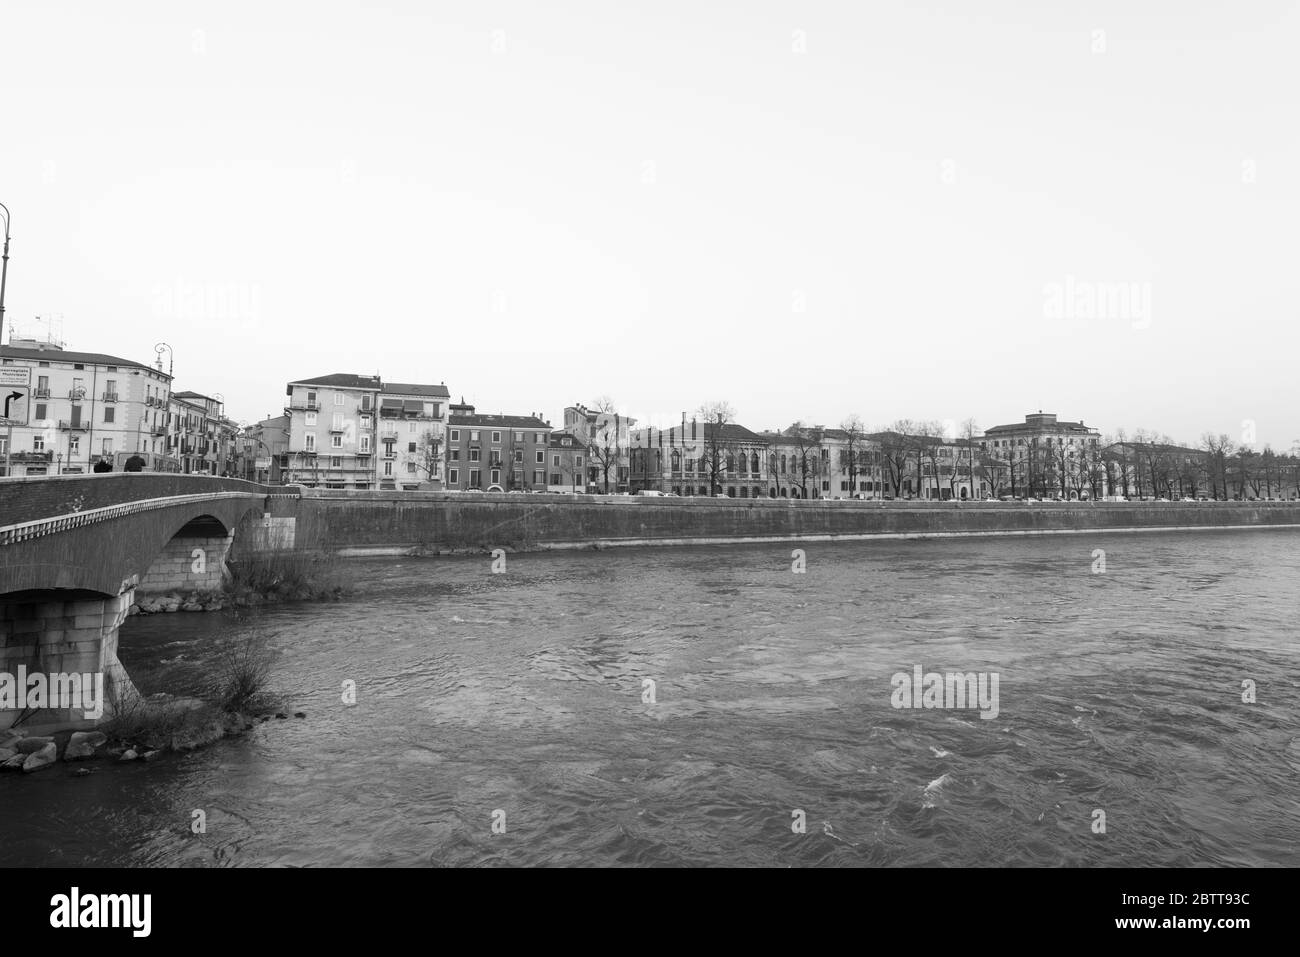 VÉRONE, ITALIE - 14, MARS 2018 : photo en noir et blanc d'une vue magnifique sur la rivière Adige et les bâtiments situés à Vérone, Italie Banque D'Images